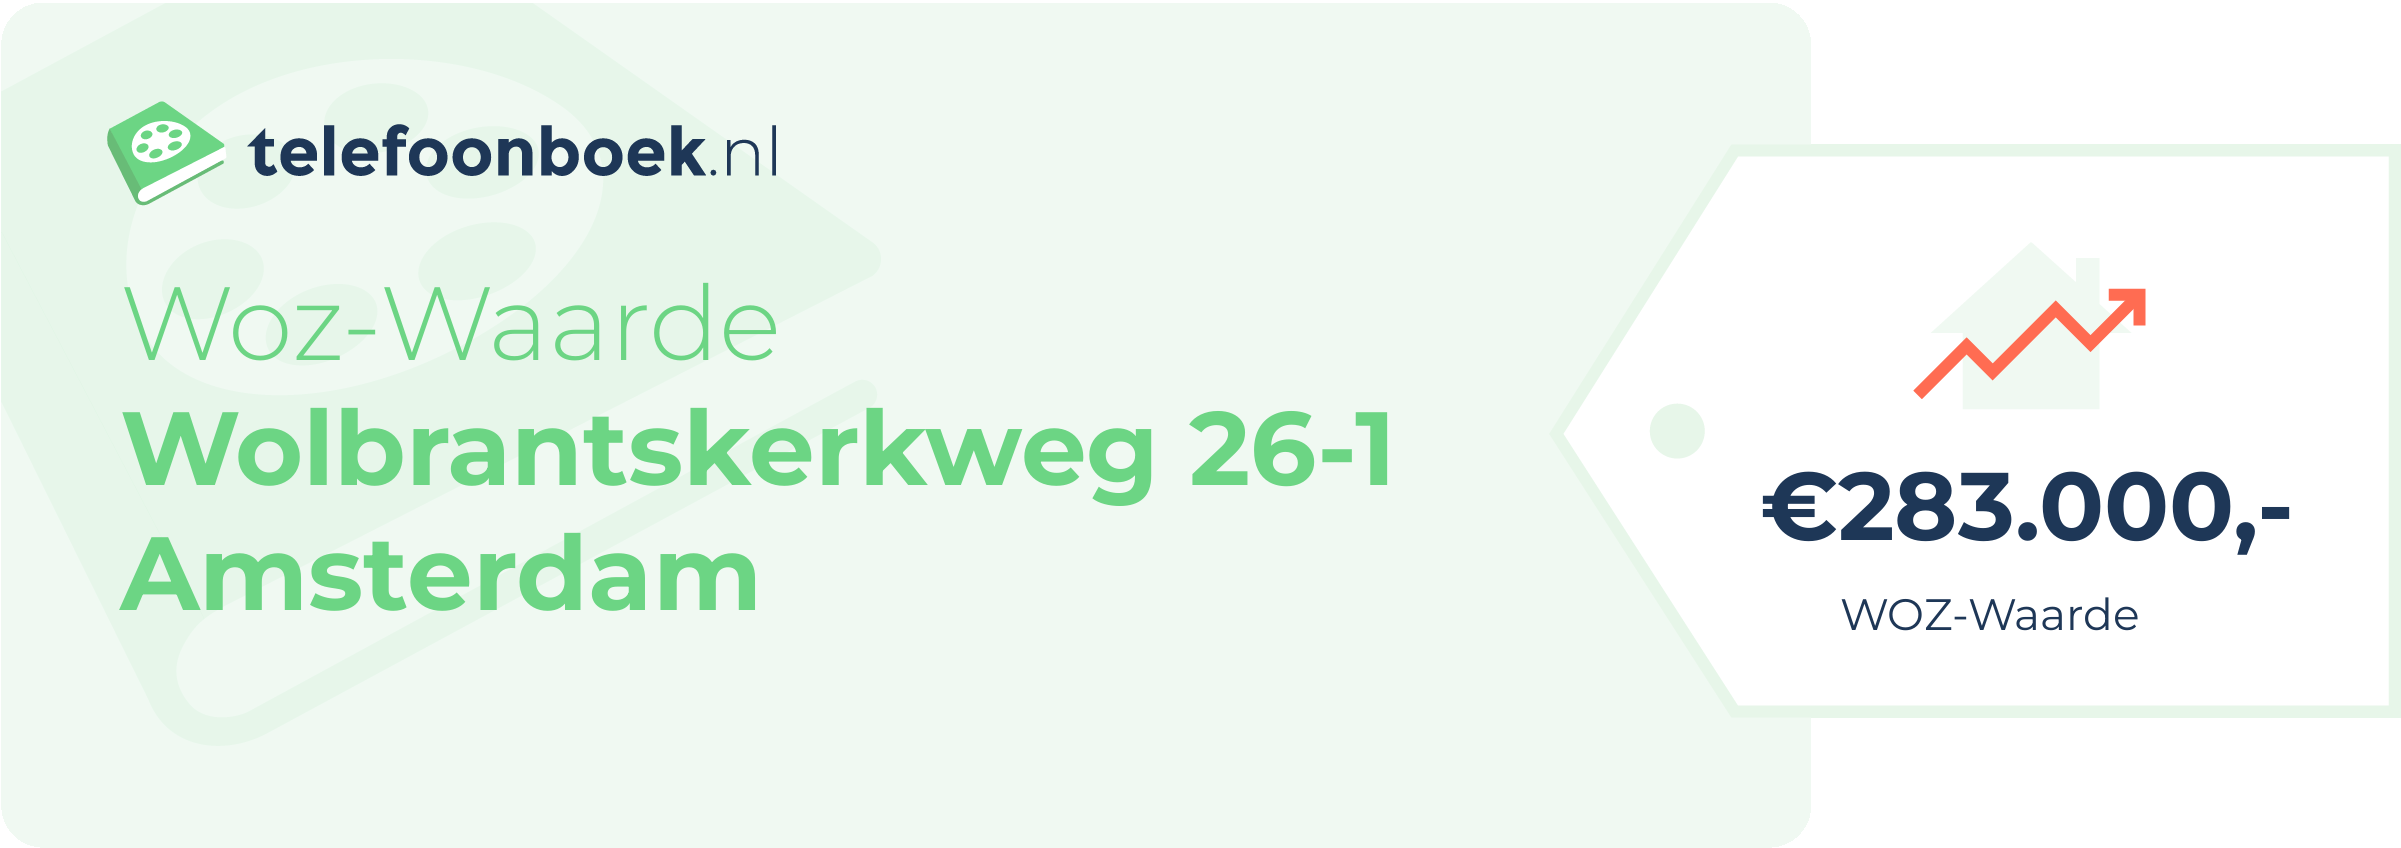 WOZ-waarde Wolbrantskerkweg 26-1 Amsterdam